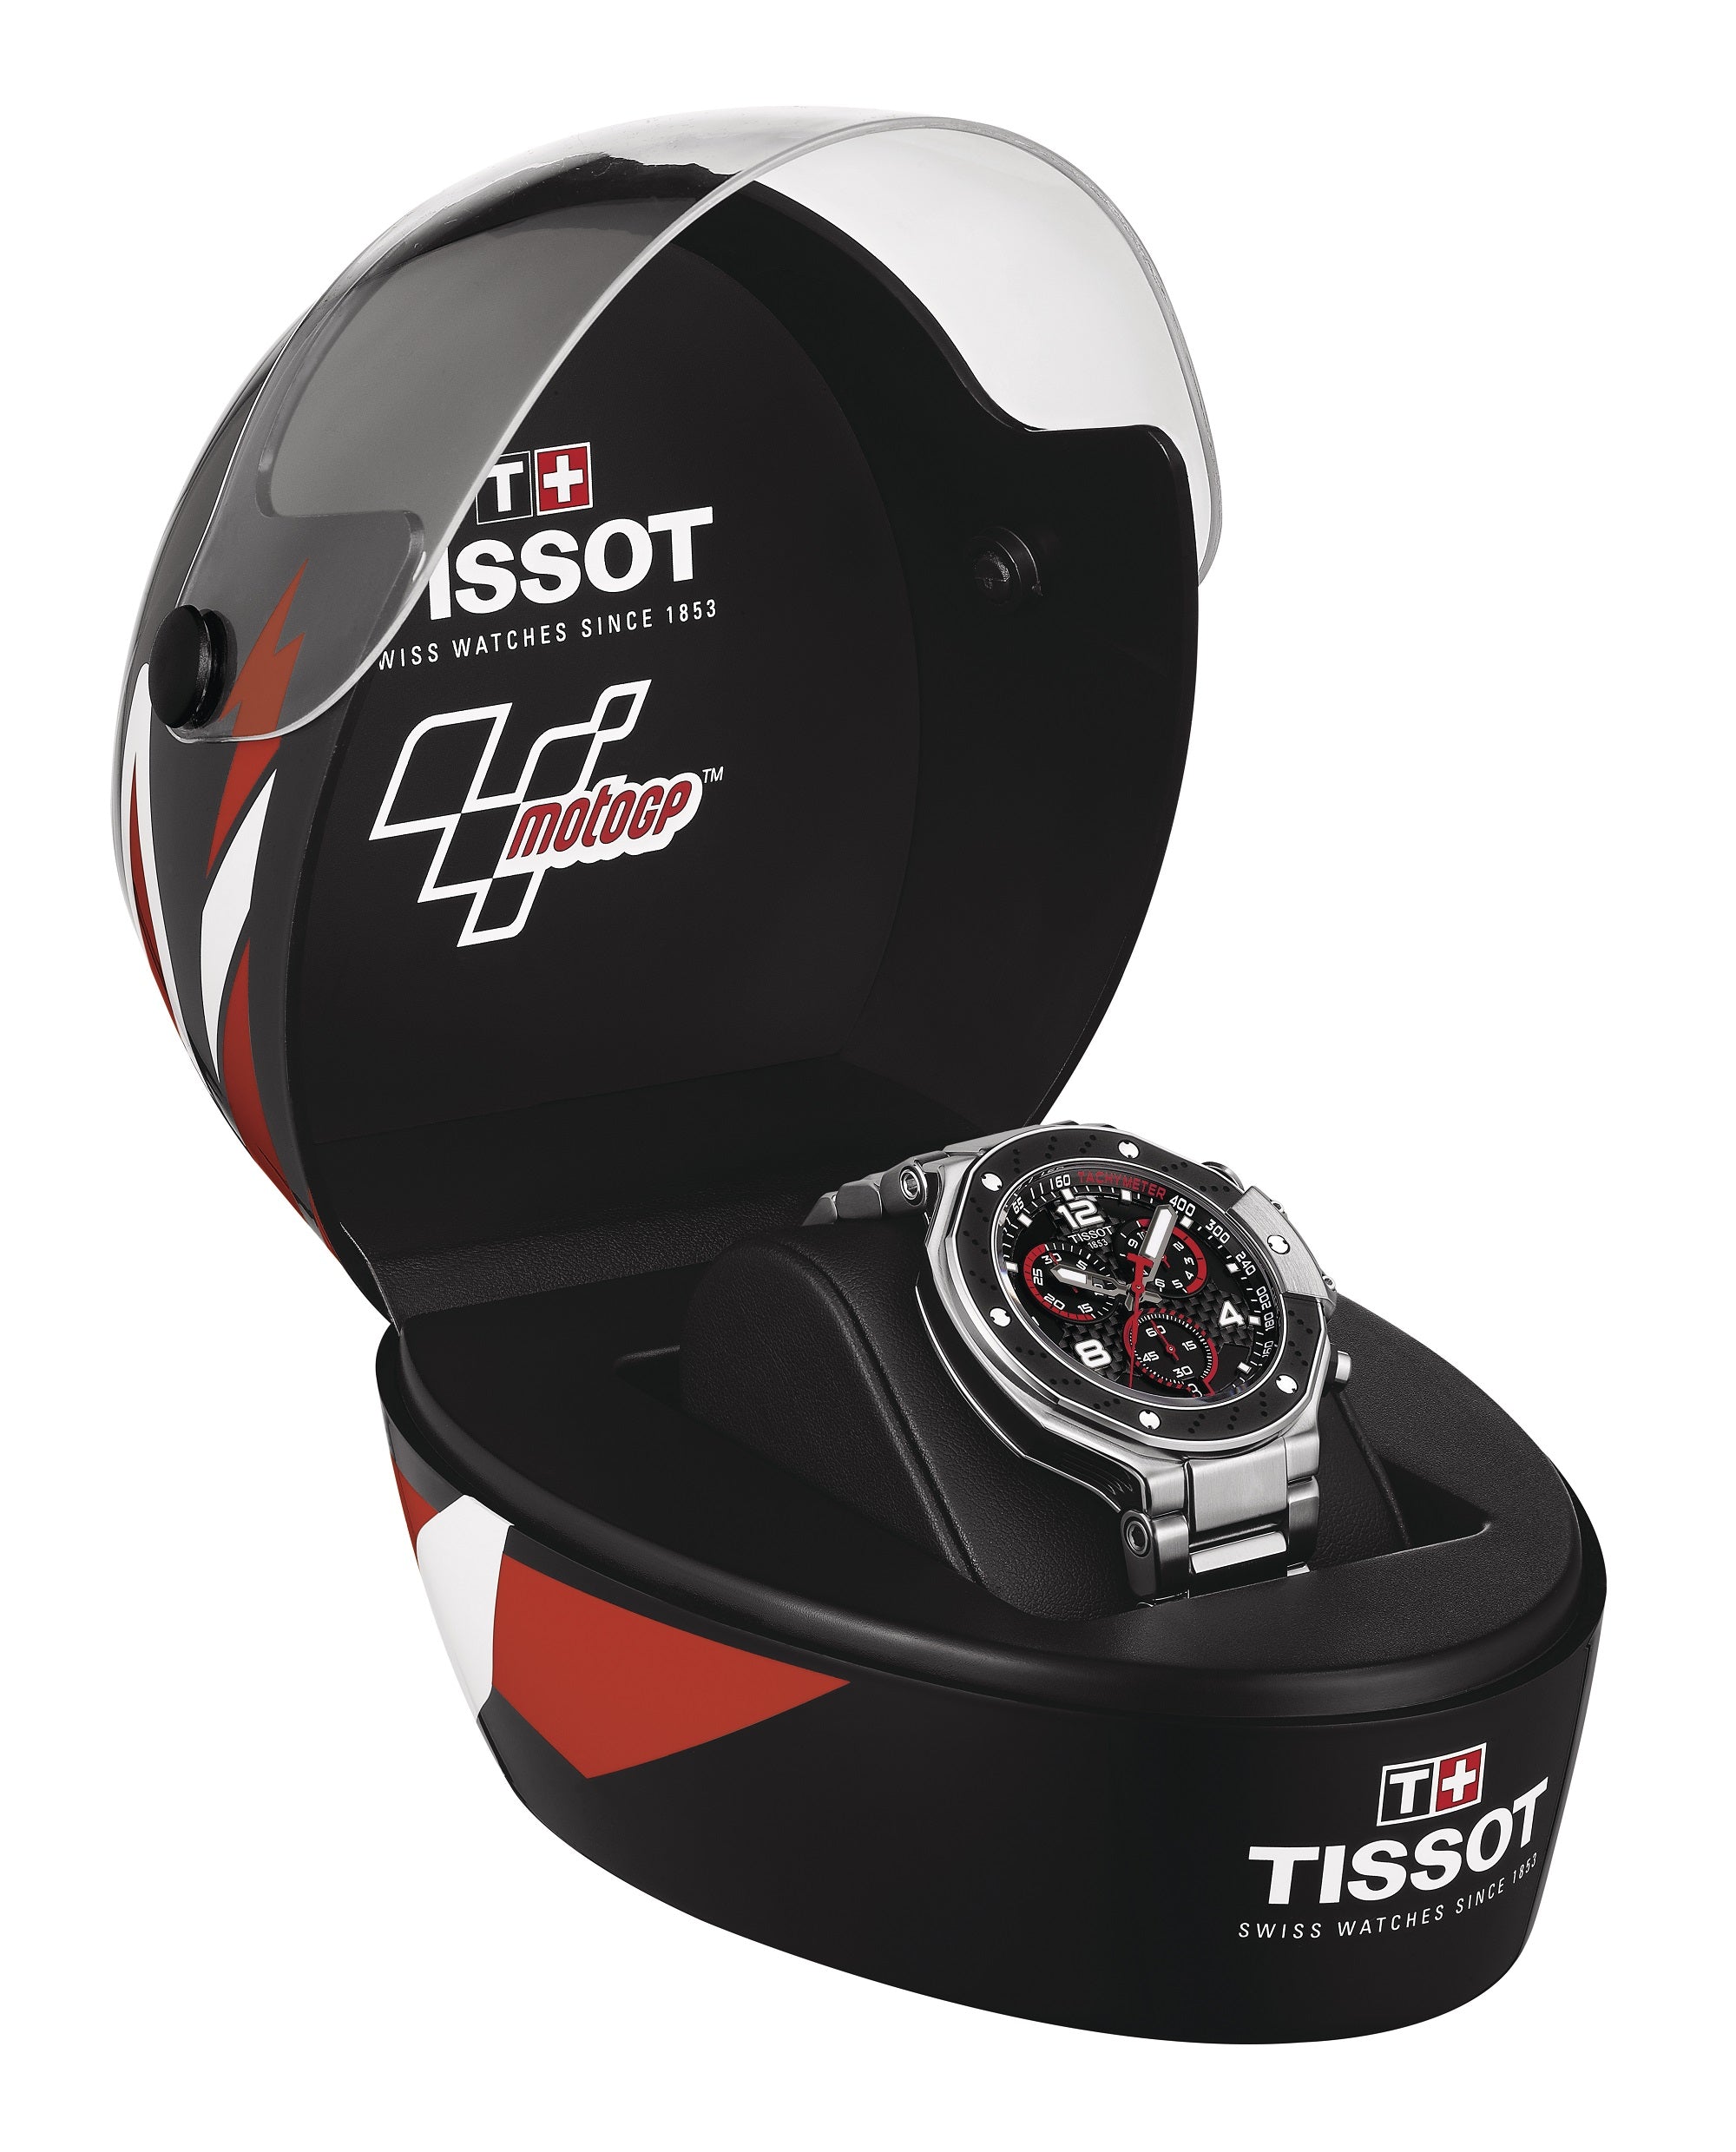 RELOJ TISSOT HOMBRE T-RACE MOTO GP22 T141.417.11.057.00 – Relojes